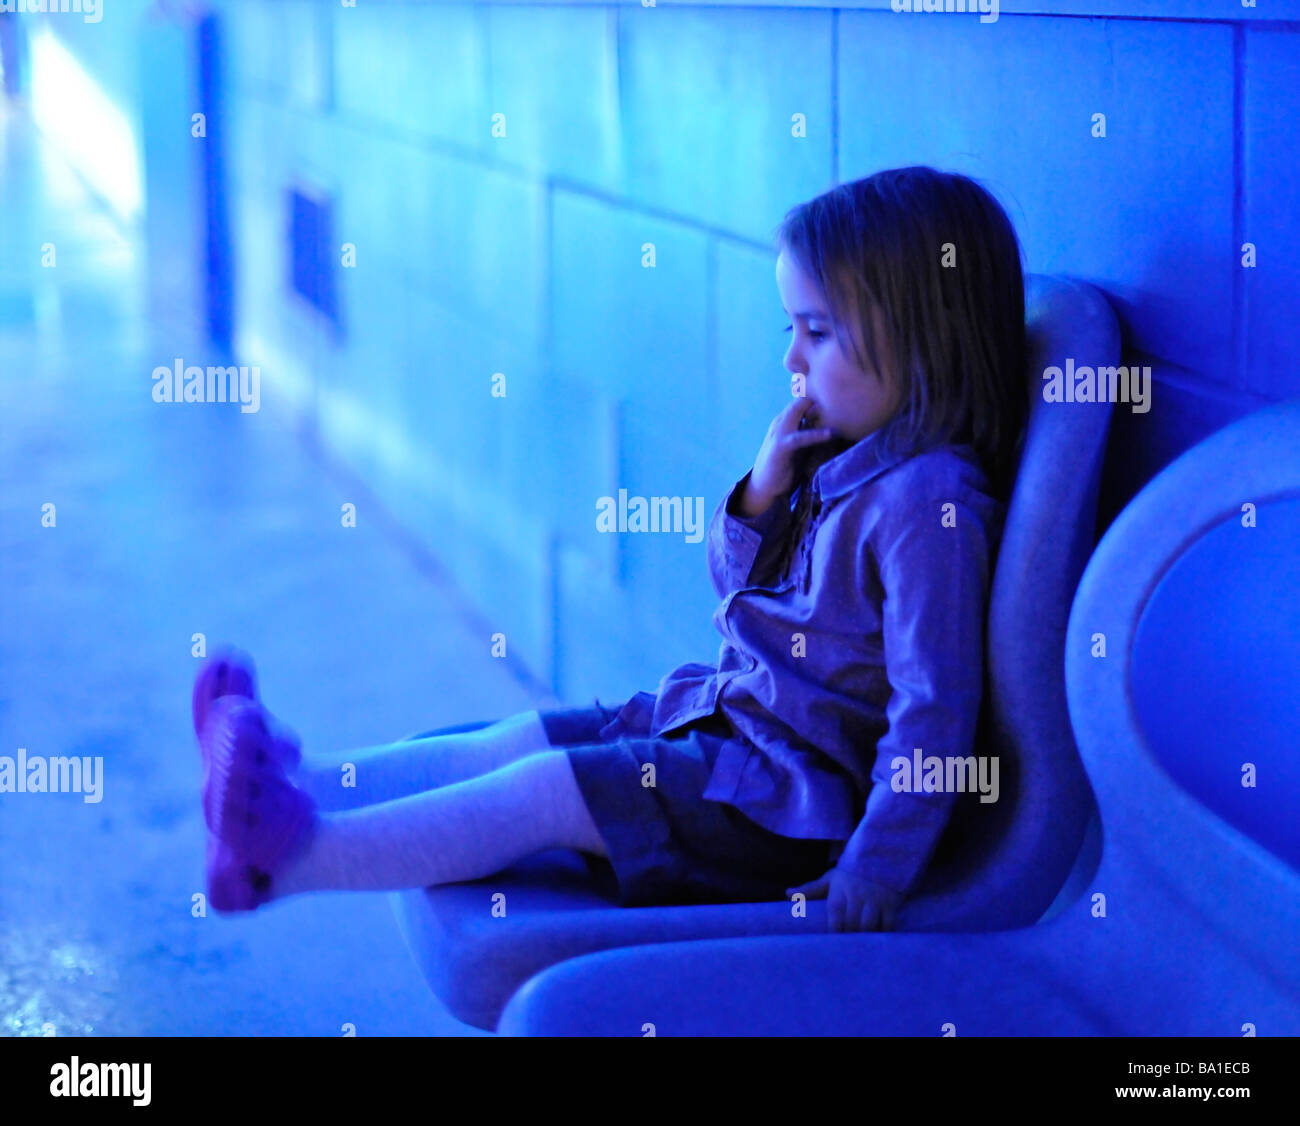 Kleinkind sitzen und saugen Finger in blaue Beleuchtung Herr Stockfoto